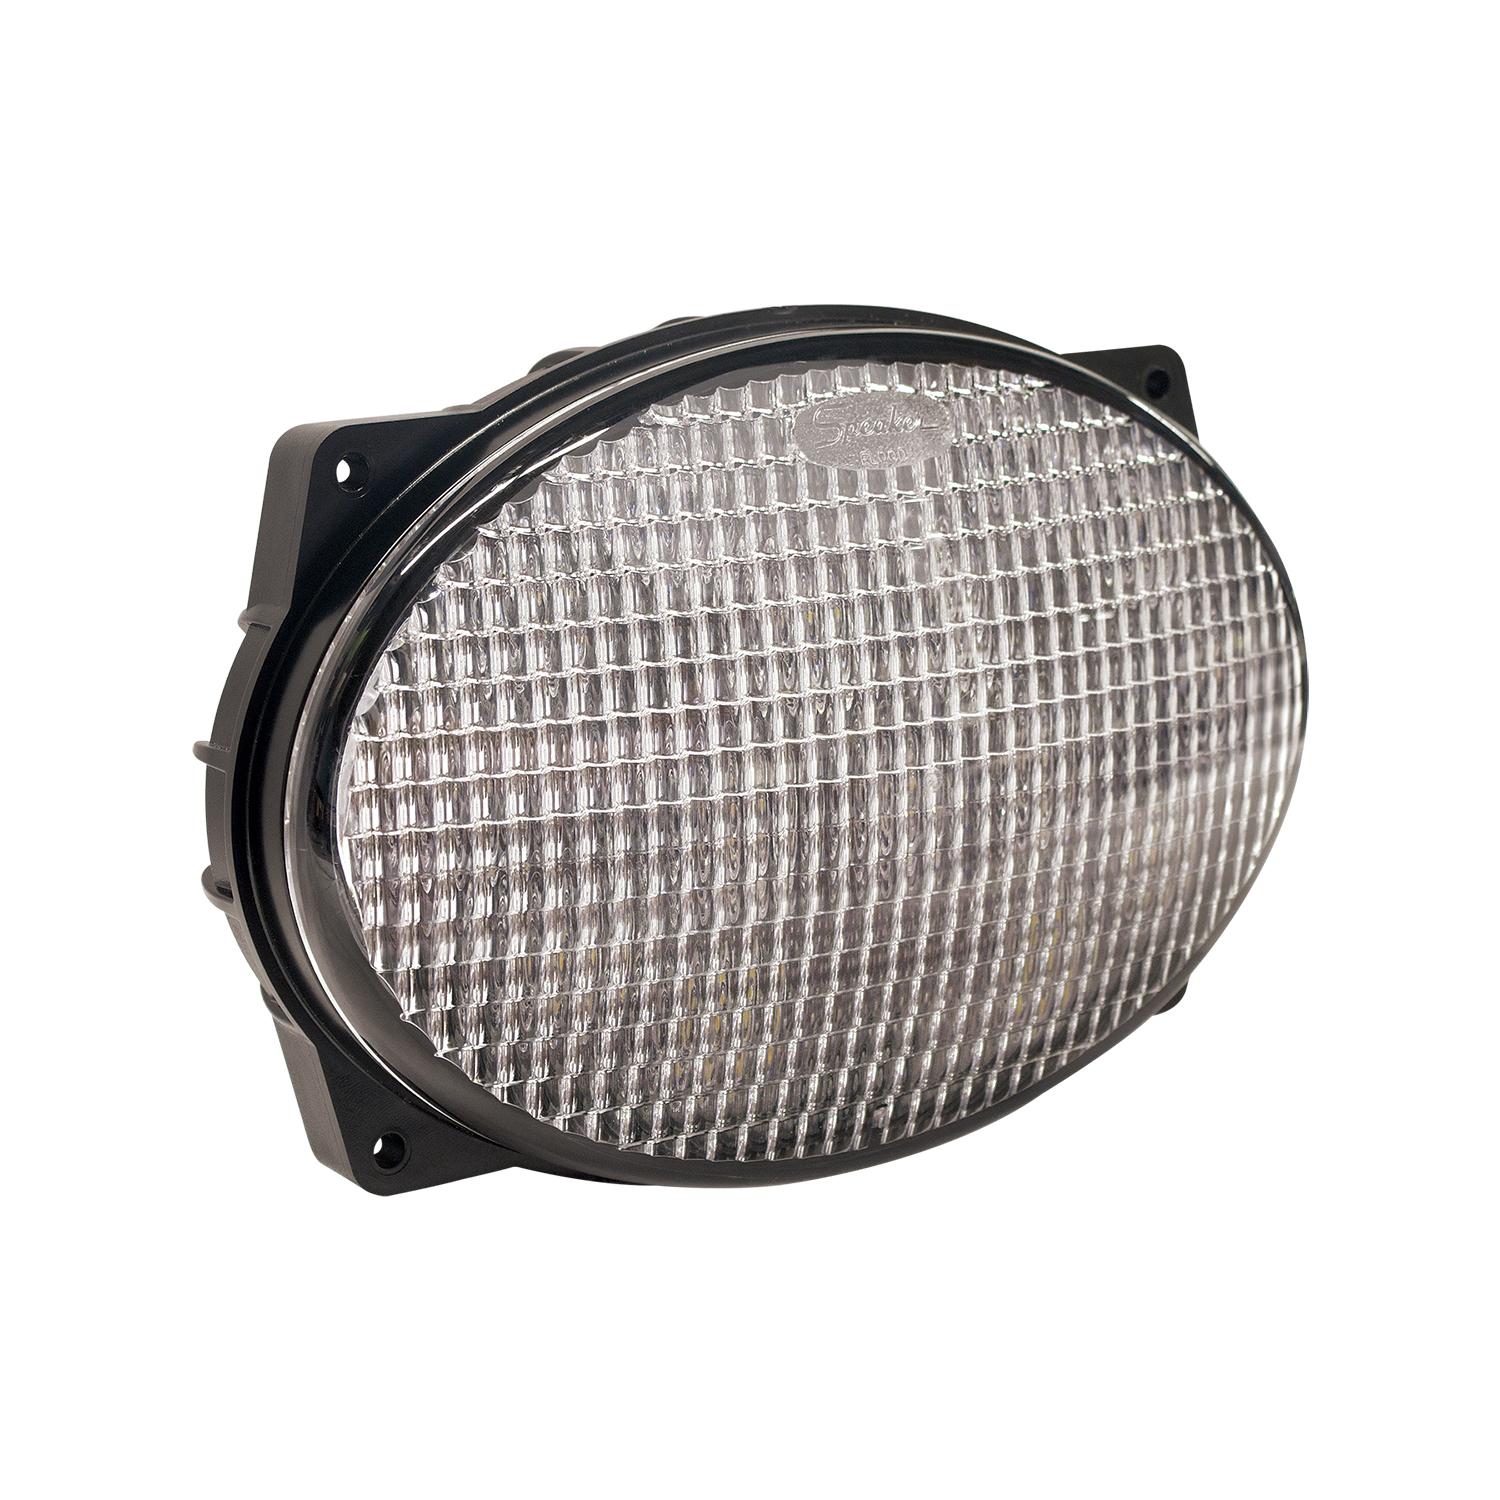 Oval LED Work Light – Model 7251 XD